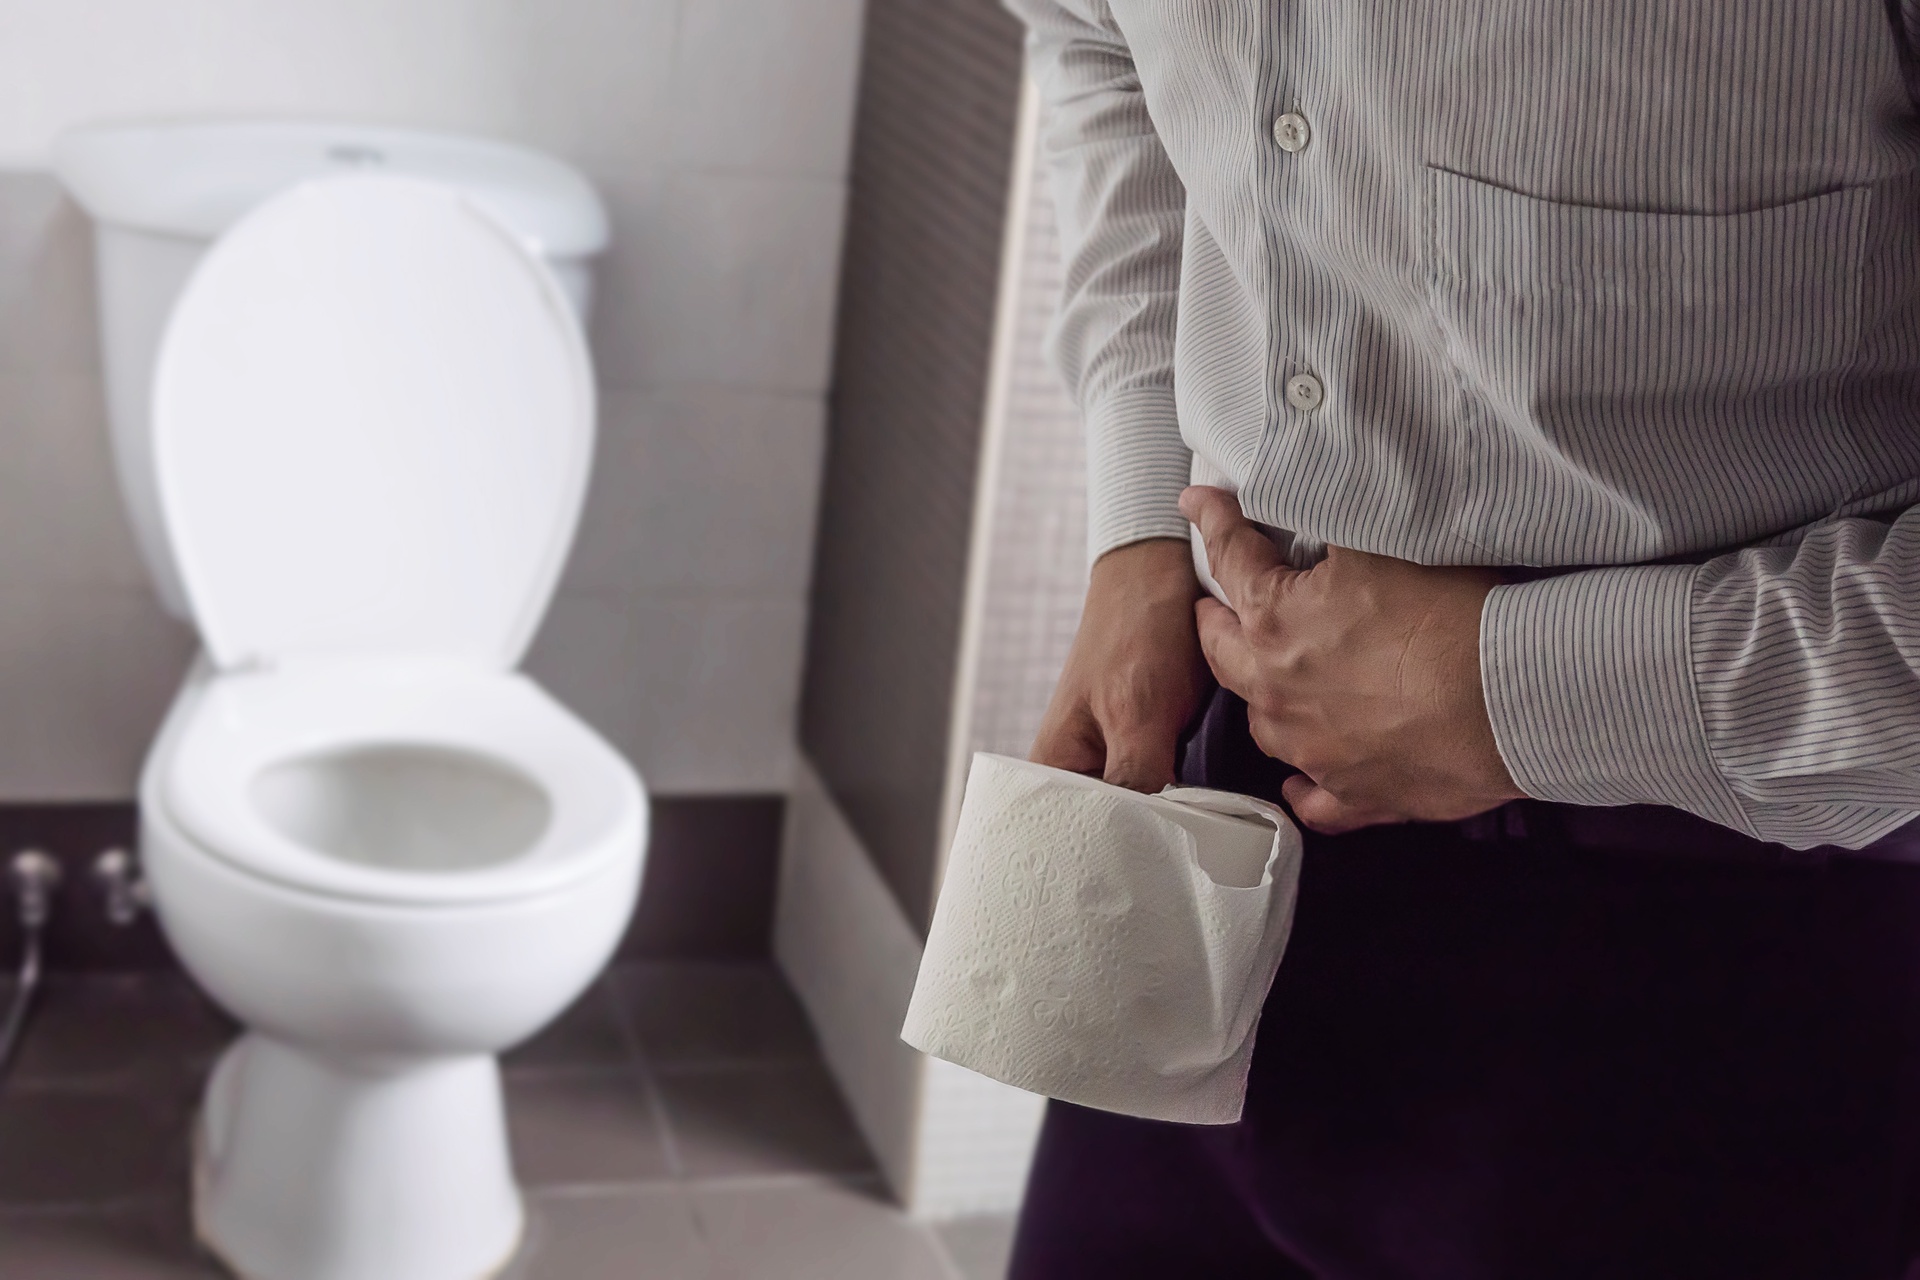 Na obrazku widać mężczyznę stojącego przy toalecie, trzymającego w ręce papier toaletowy, z problemem śluzu w kale. Jego wyraz twarzy wyraża zaniepokojenie i niepokój. Obrazek ukazuje trudności i dyskomfort, związane z obecnością śluzu w kale, oraz potrzebę podjęcia odpowiednich działań w celu rozwiązania tego problemu